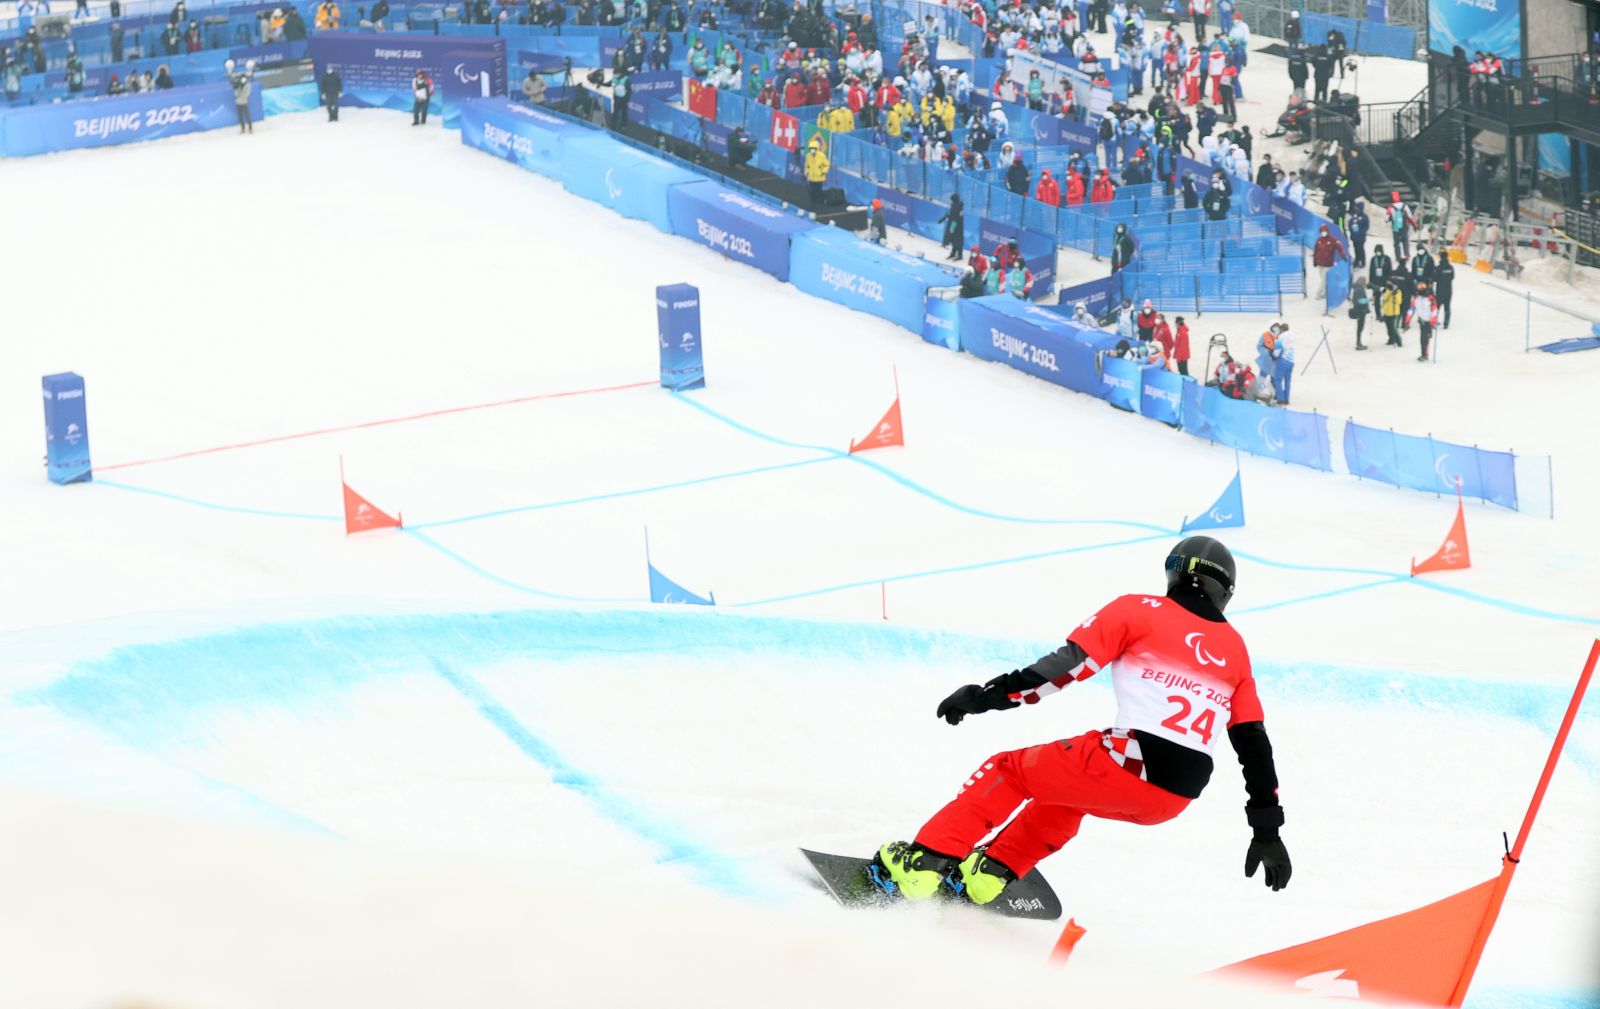 Peking, 11.03.2022 - Hrvatski paraolimpijac Bruno Bonjak tijekom utrke snowborda, banked slalom na Paraolimijskim igrma Peking 2022. Na slici Bruno Bonjak.
foto HINA/ Damir SENCAR/ ds